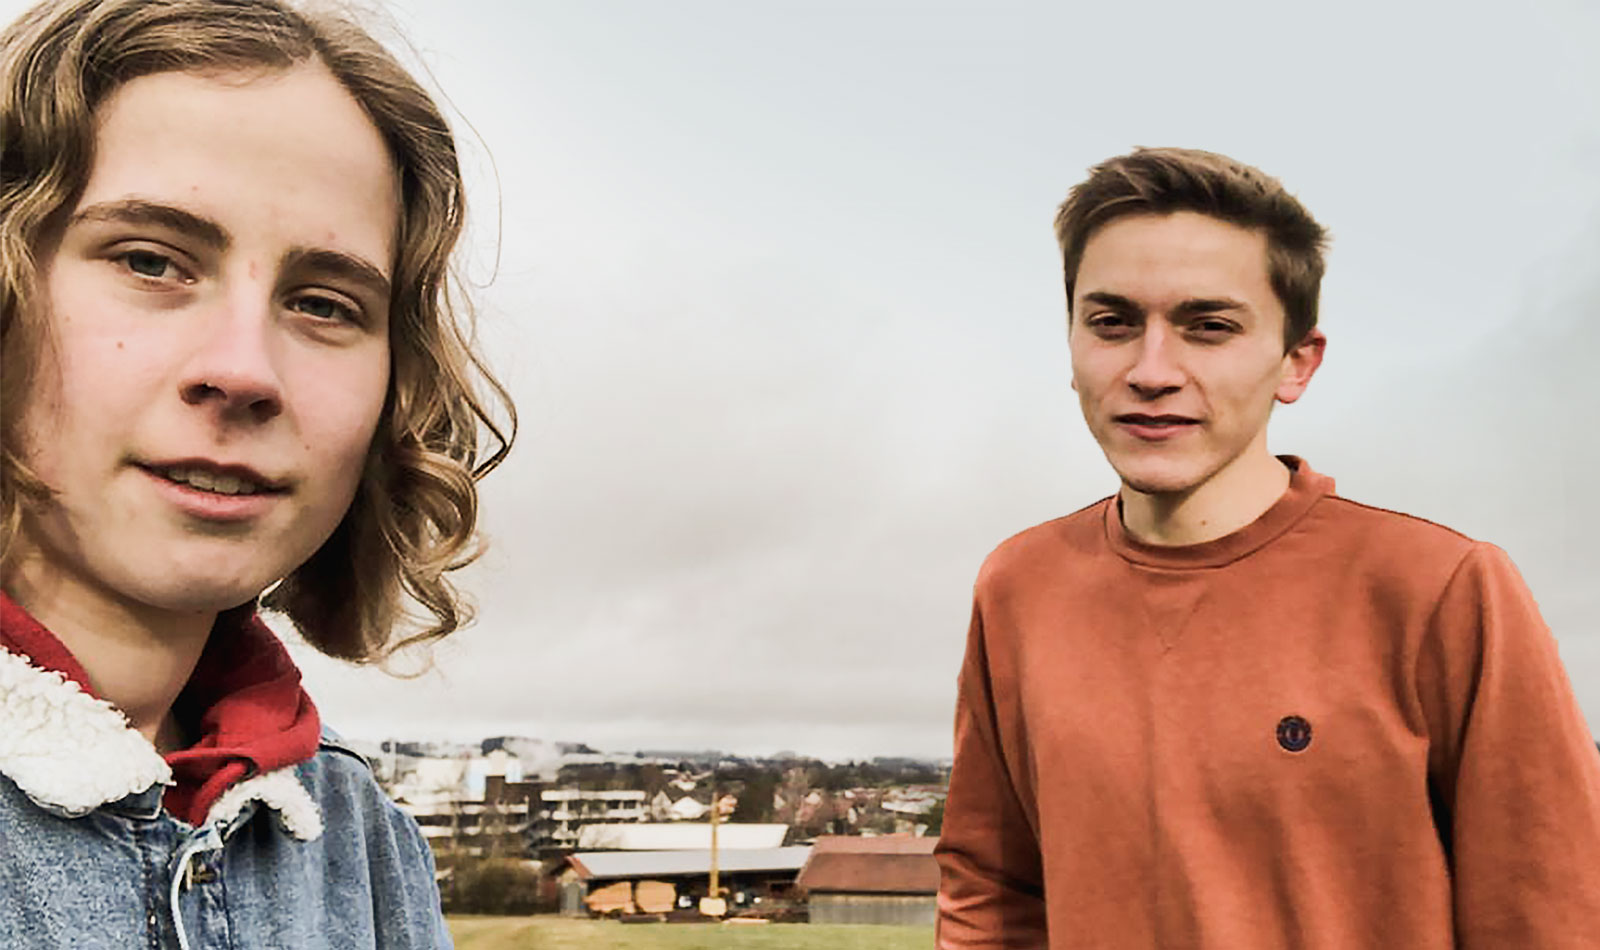 Selfie von zwei jungen Menschen auf einem Hügel